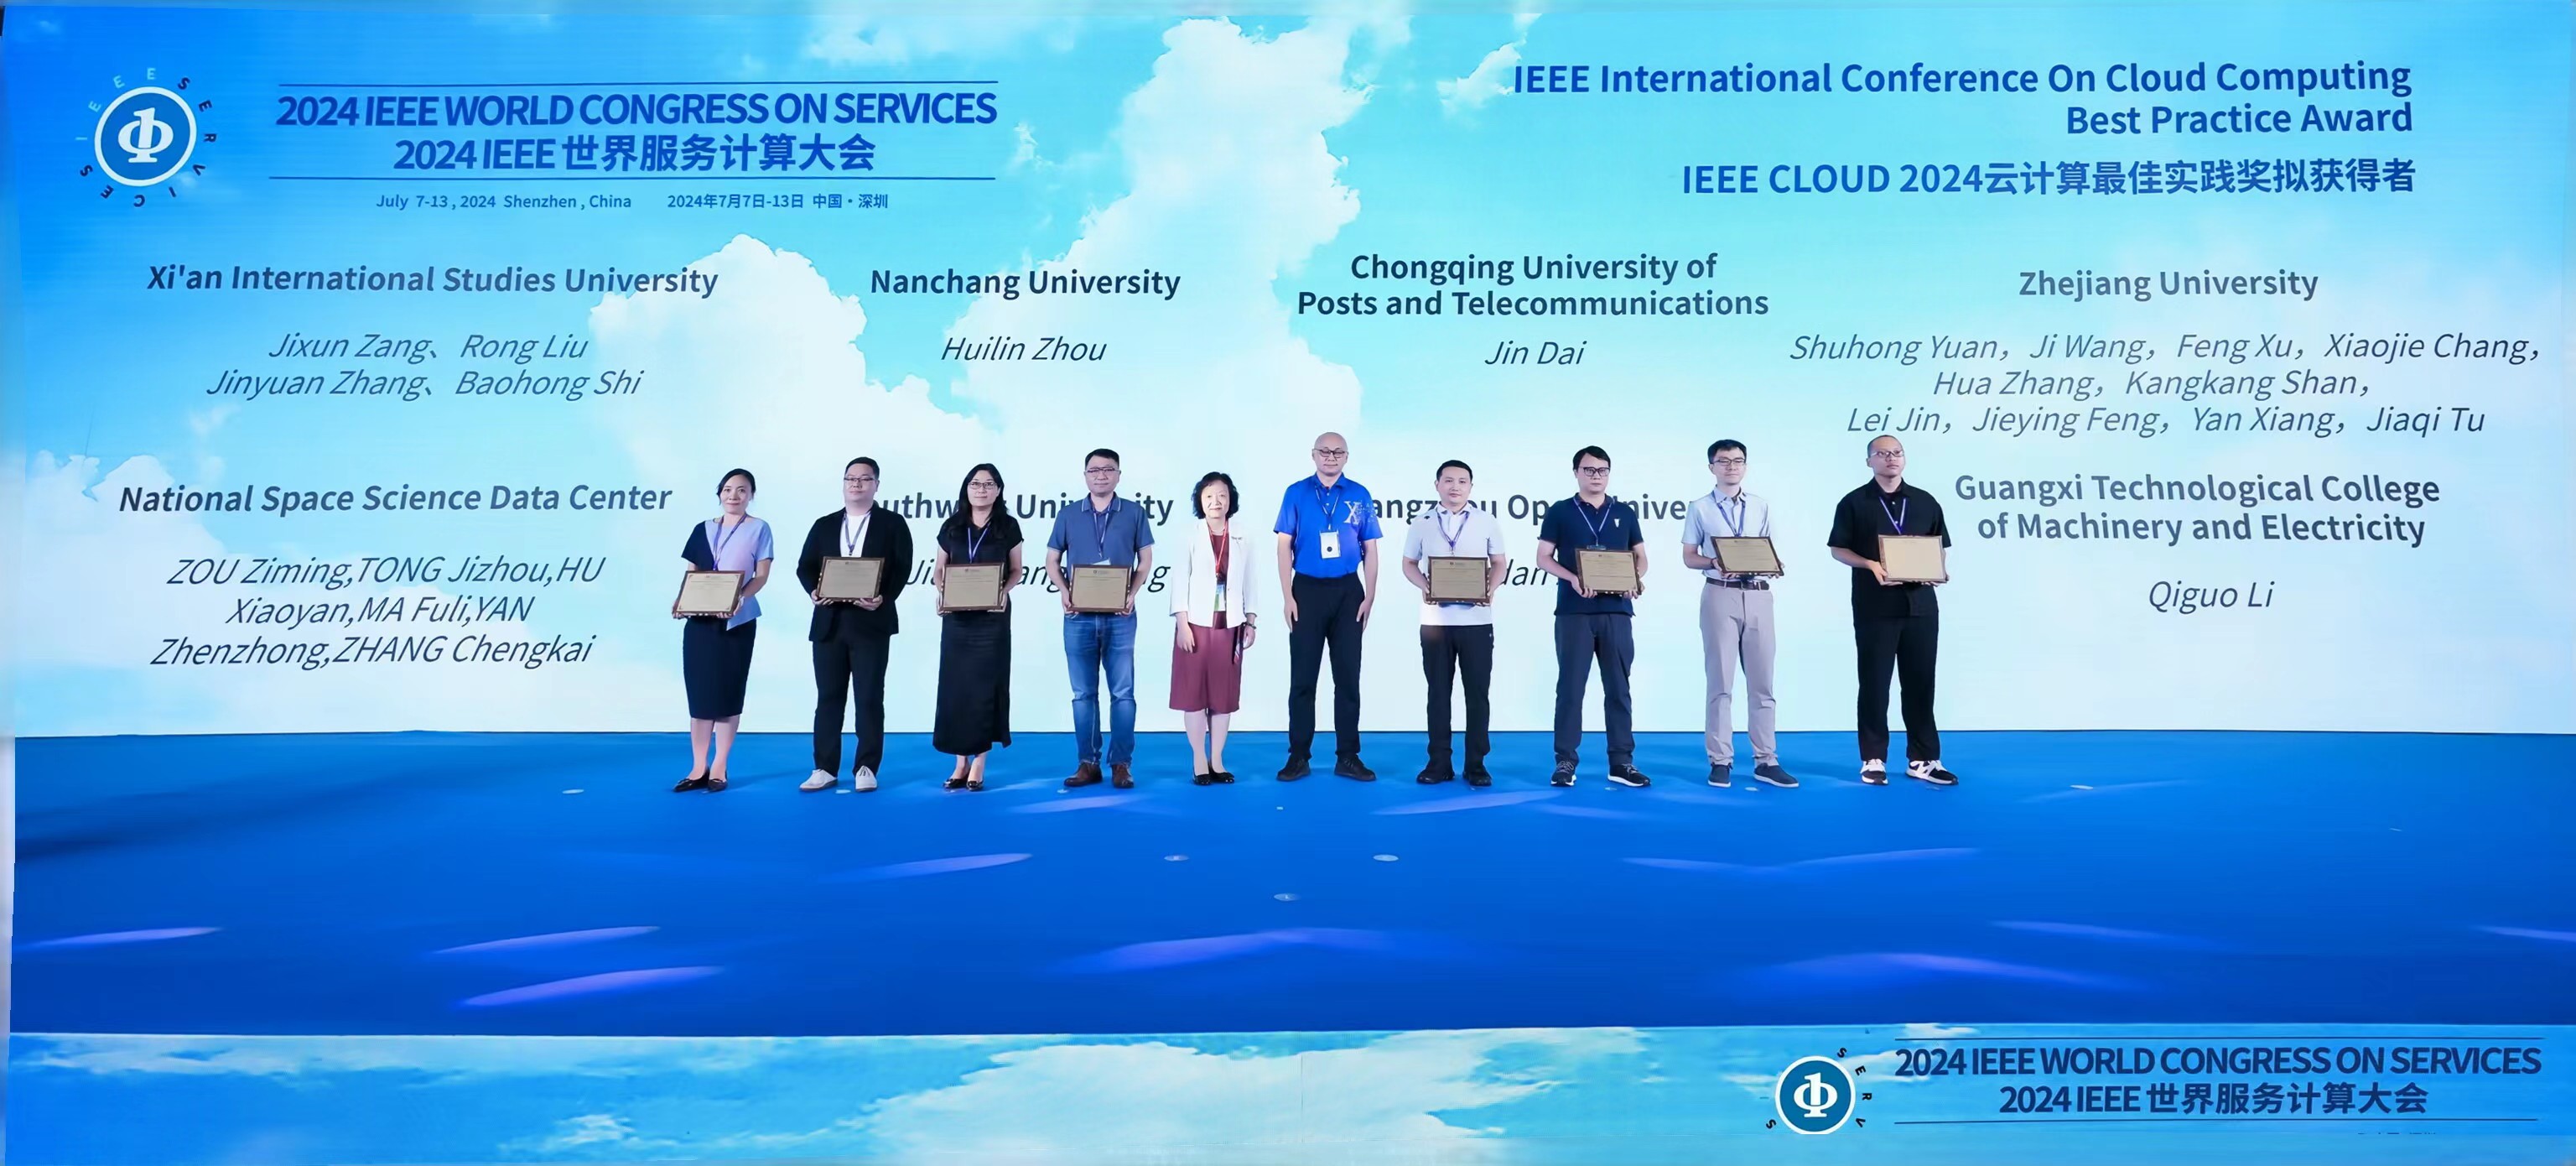 我校在IEEE世界服务计算大会中荣获“IEEE Cloud 2024云计算最佳实践奖”